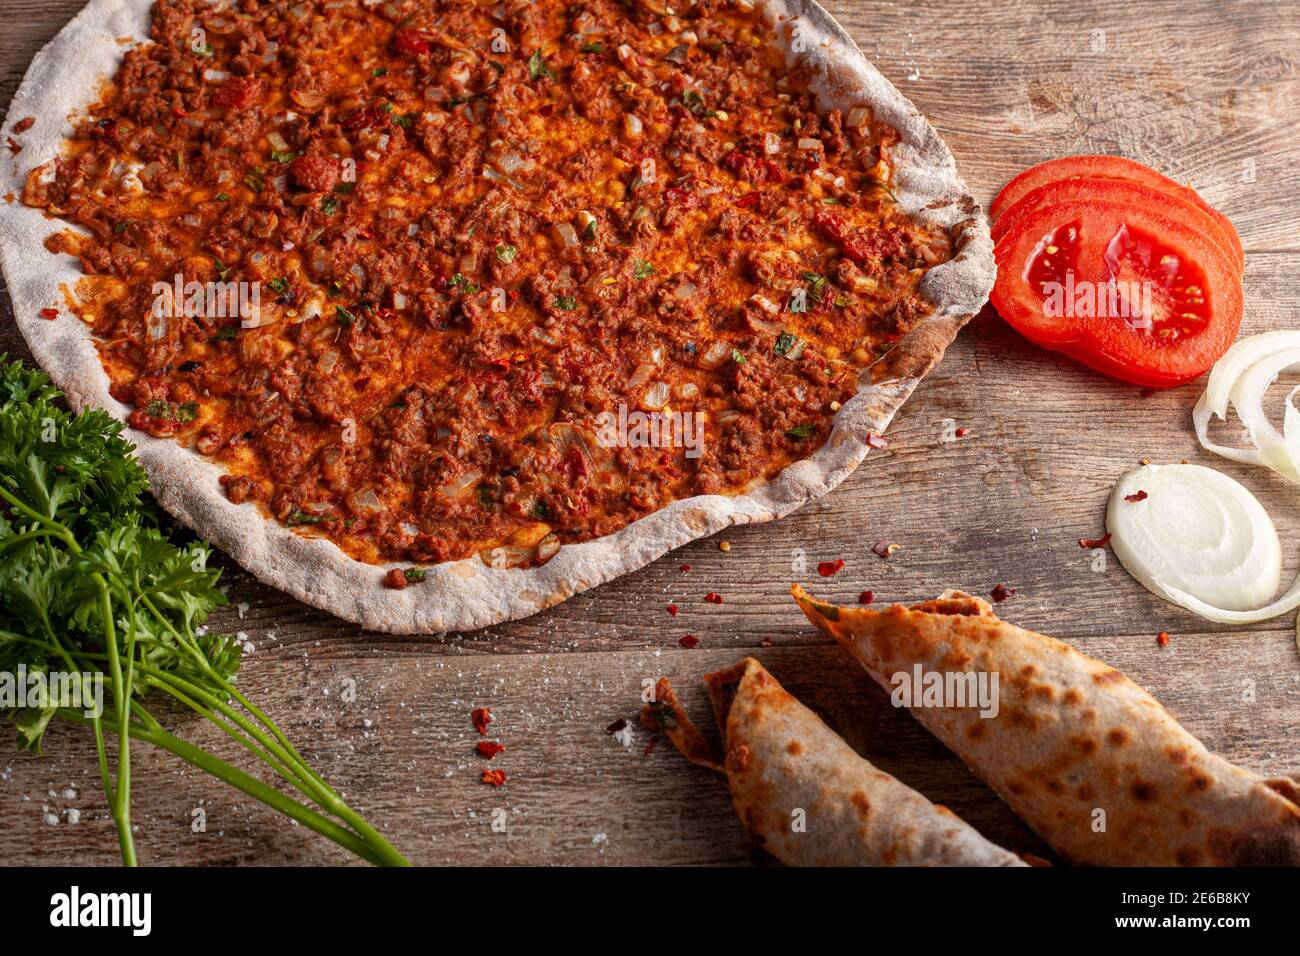 Pizza turque traditionnelle connue sous le nom de Lahmacun faite avec une fine pâte plate recouverte d'un mélange contenant du bœuf haché et cuite au four à pierre. Il est service Banque D'Images